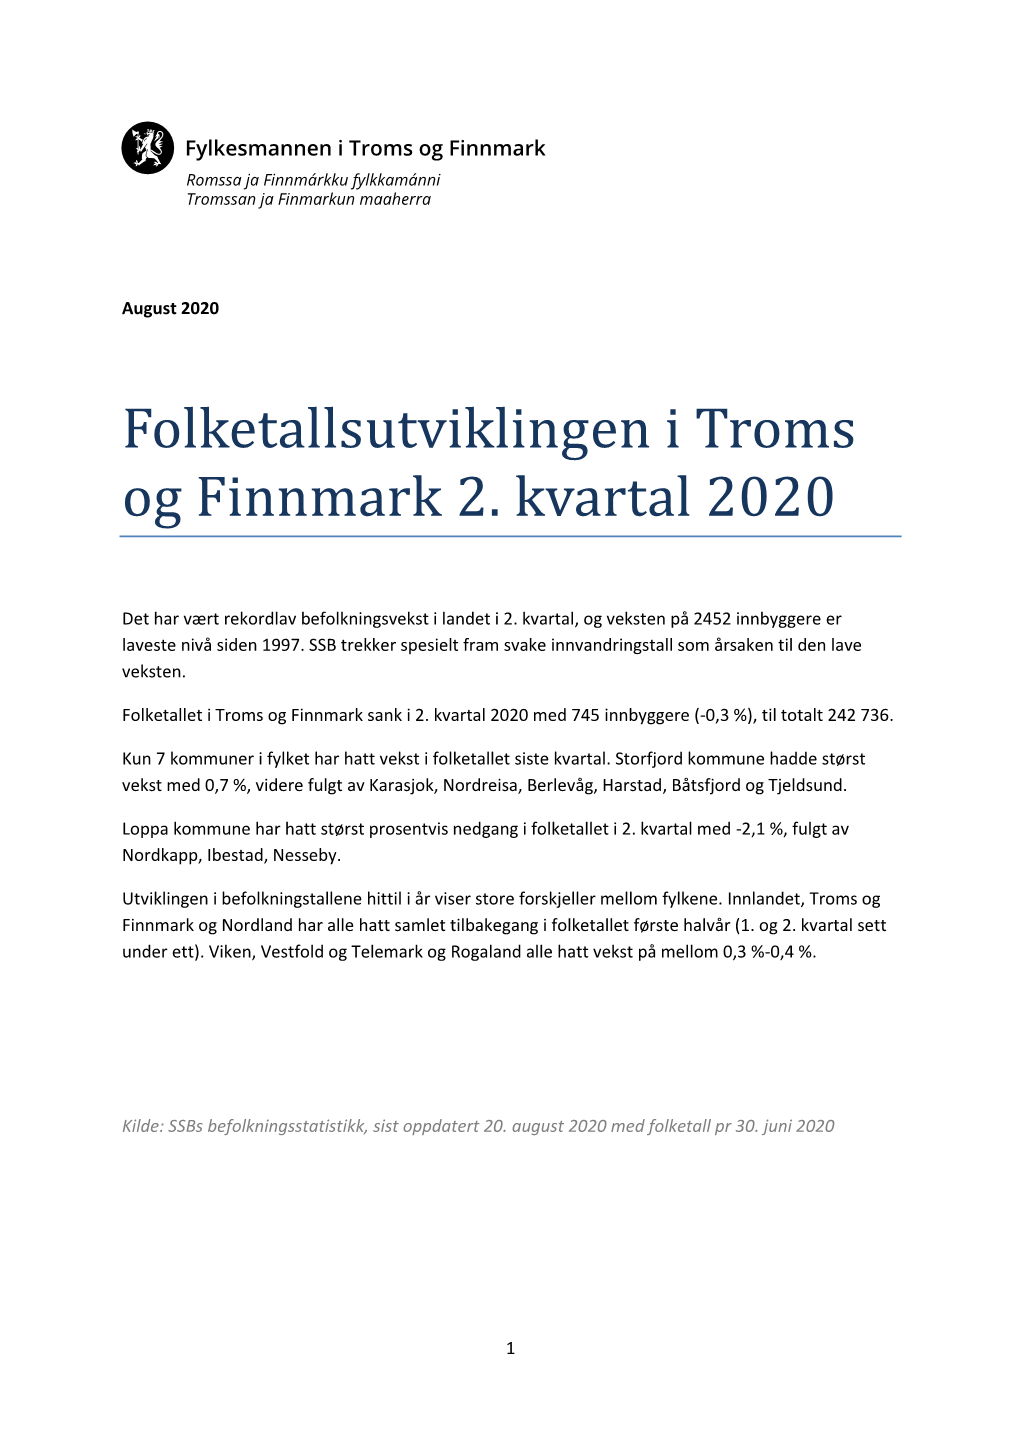 Folketallsutviklingen I Troms Og Finnmark 2. Kvartal 2020